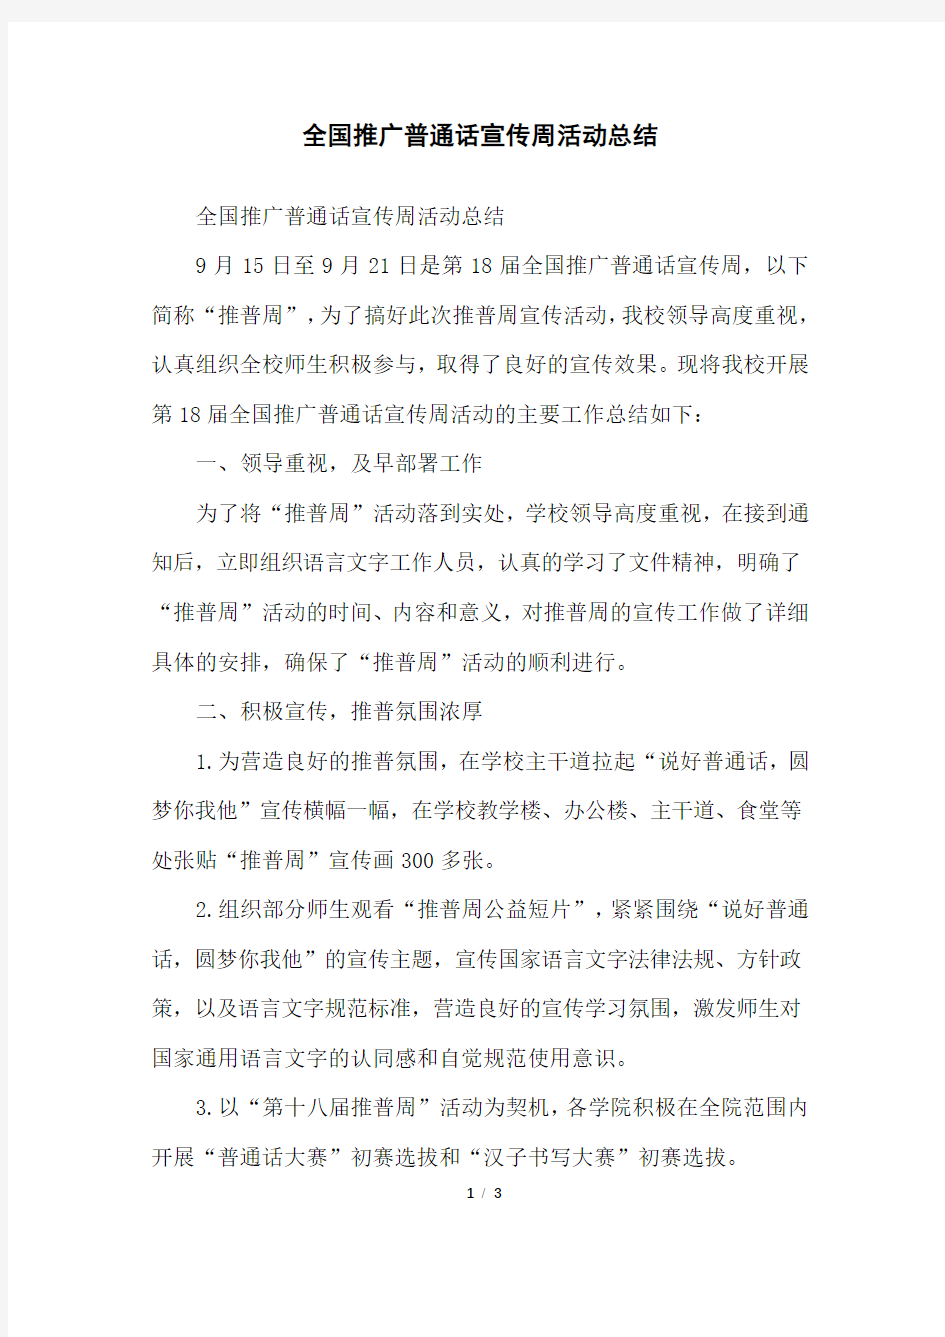 全国推广普通话宣传周活动总结